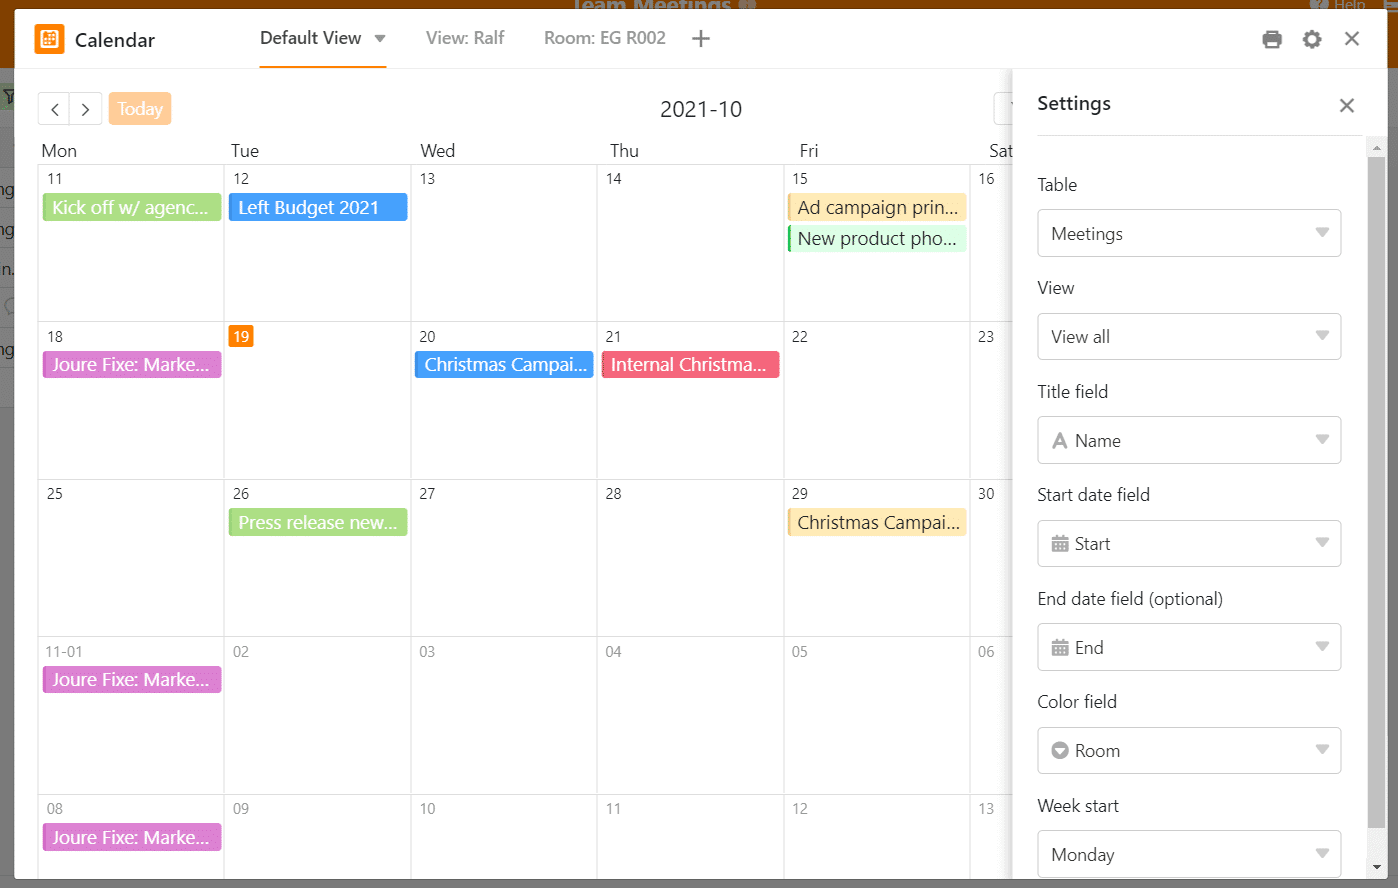 En el calendario puedes ver todas las reuniones